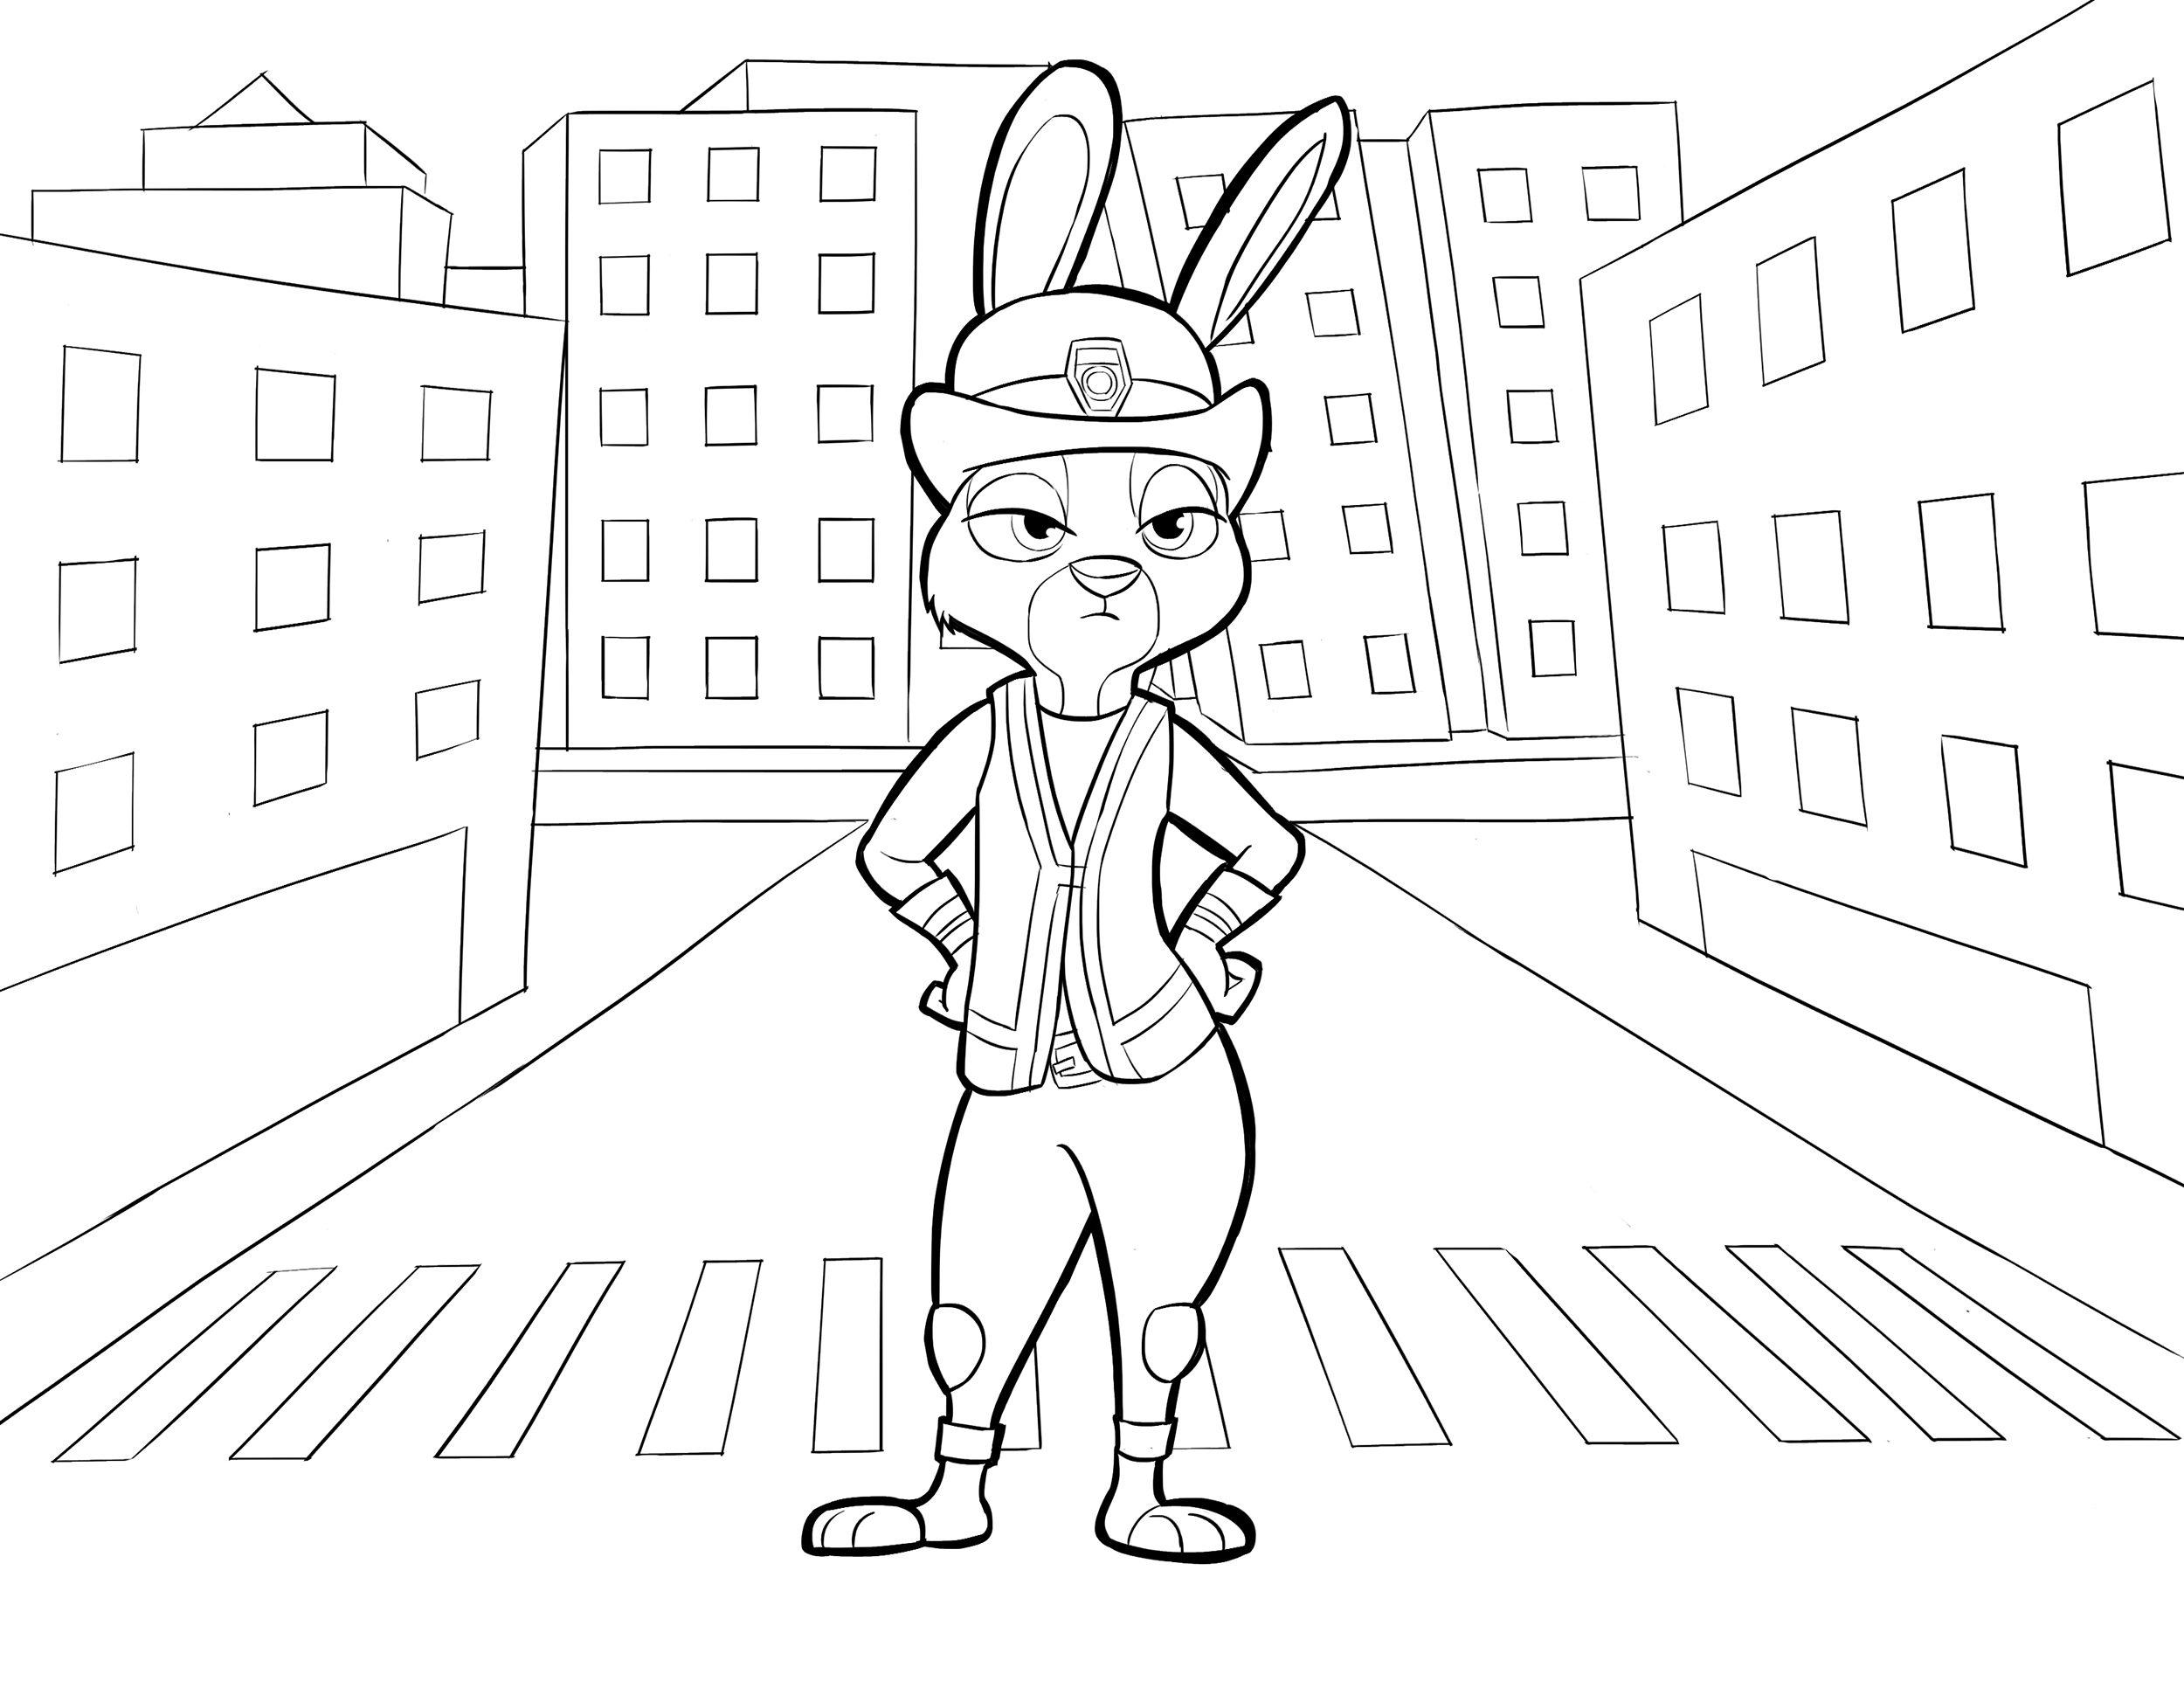 Judy la lapine policière, héroïne de Zootopie de Disney